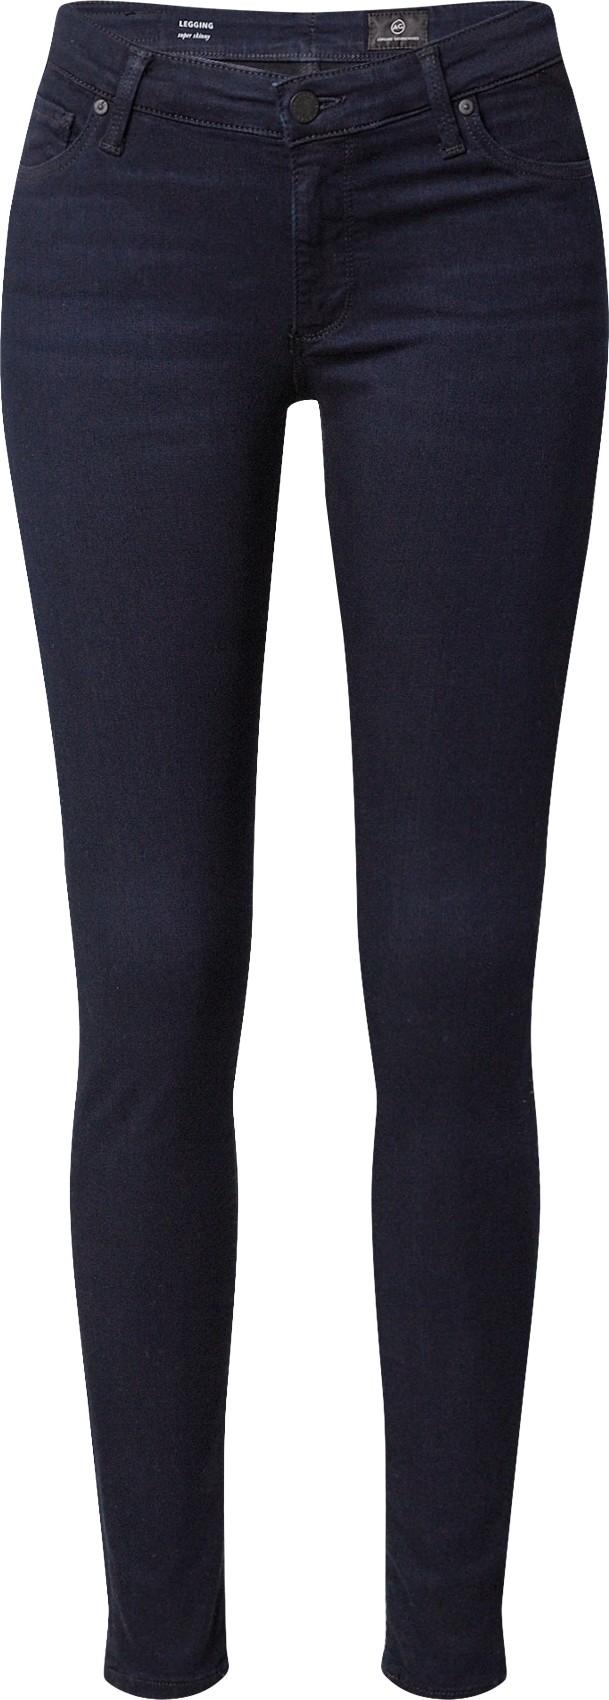 AG Jeans Džíny 'Legging' tmavě modrá